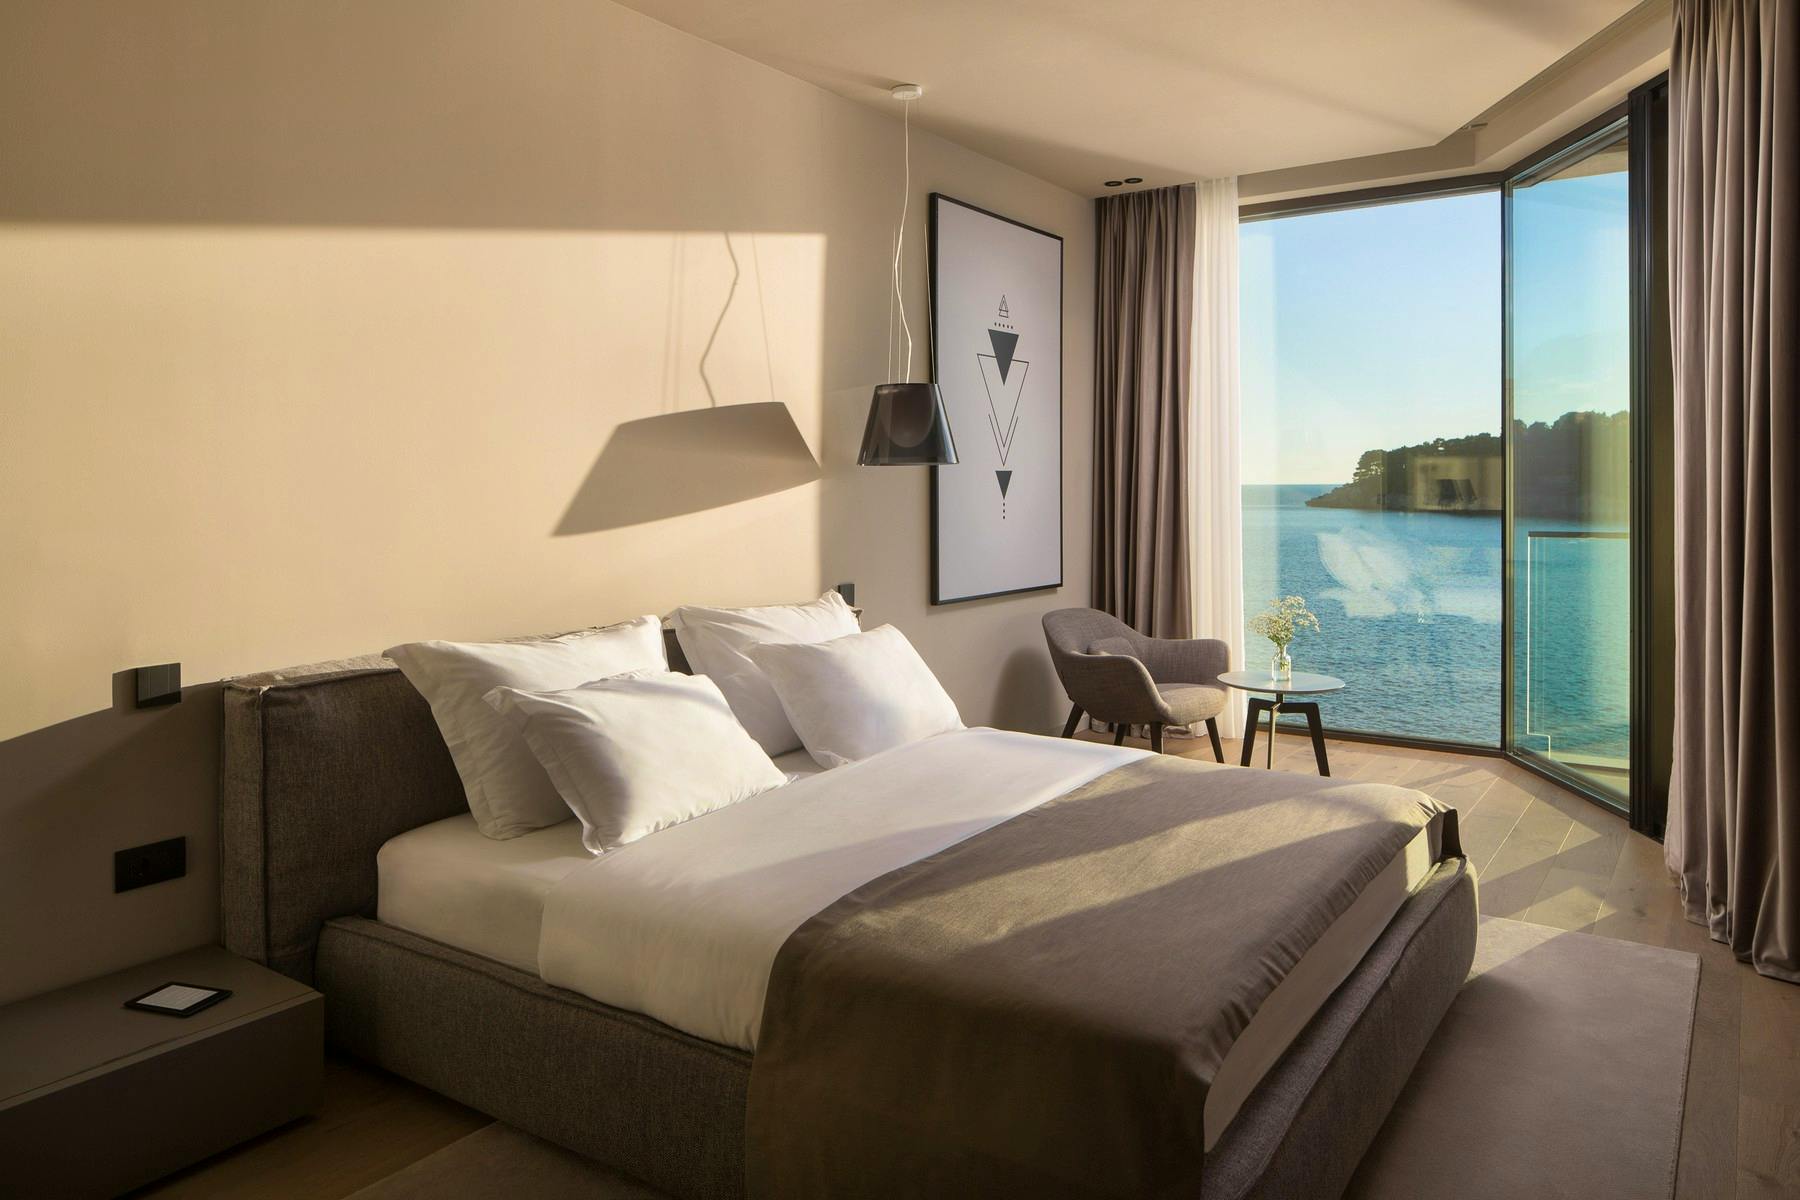 Double bedroom boasting scenic views